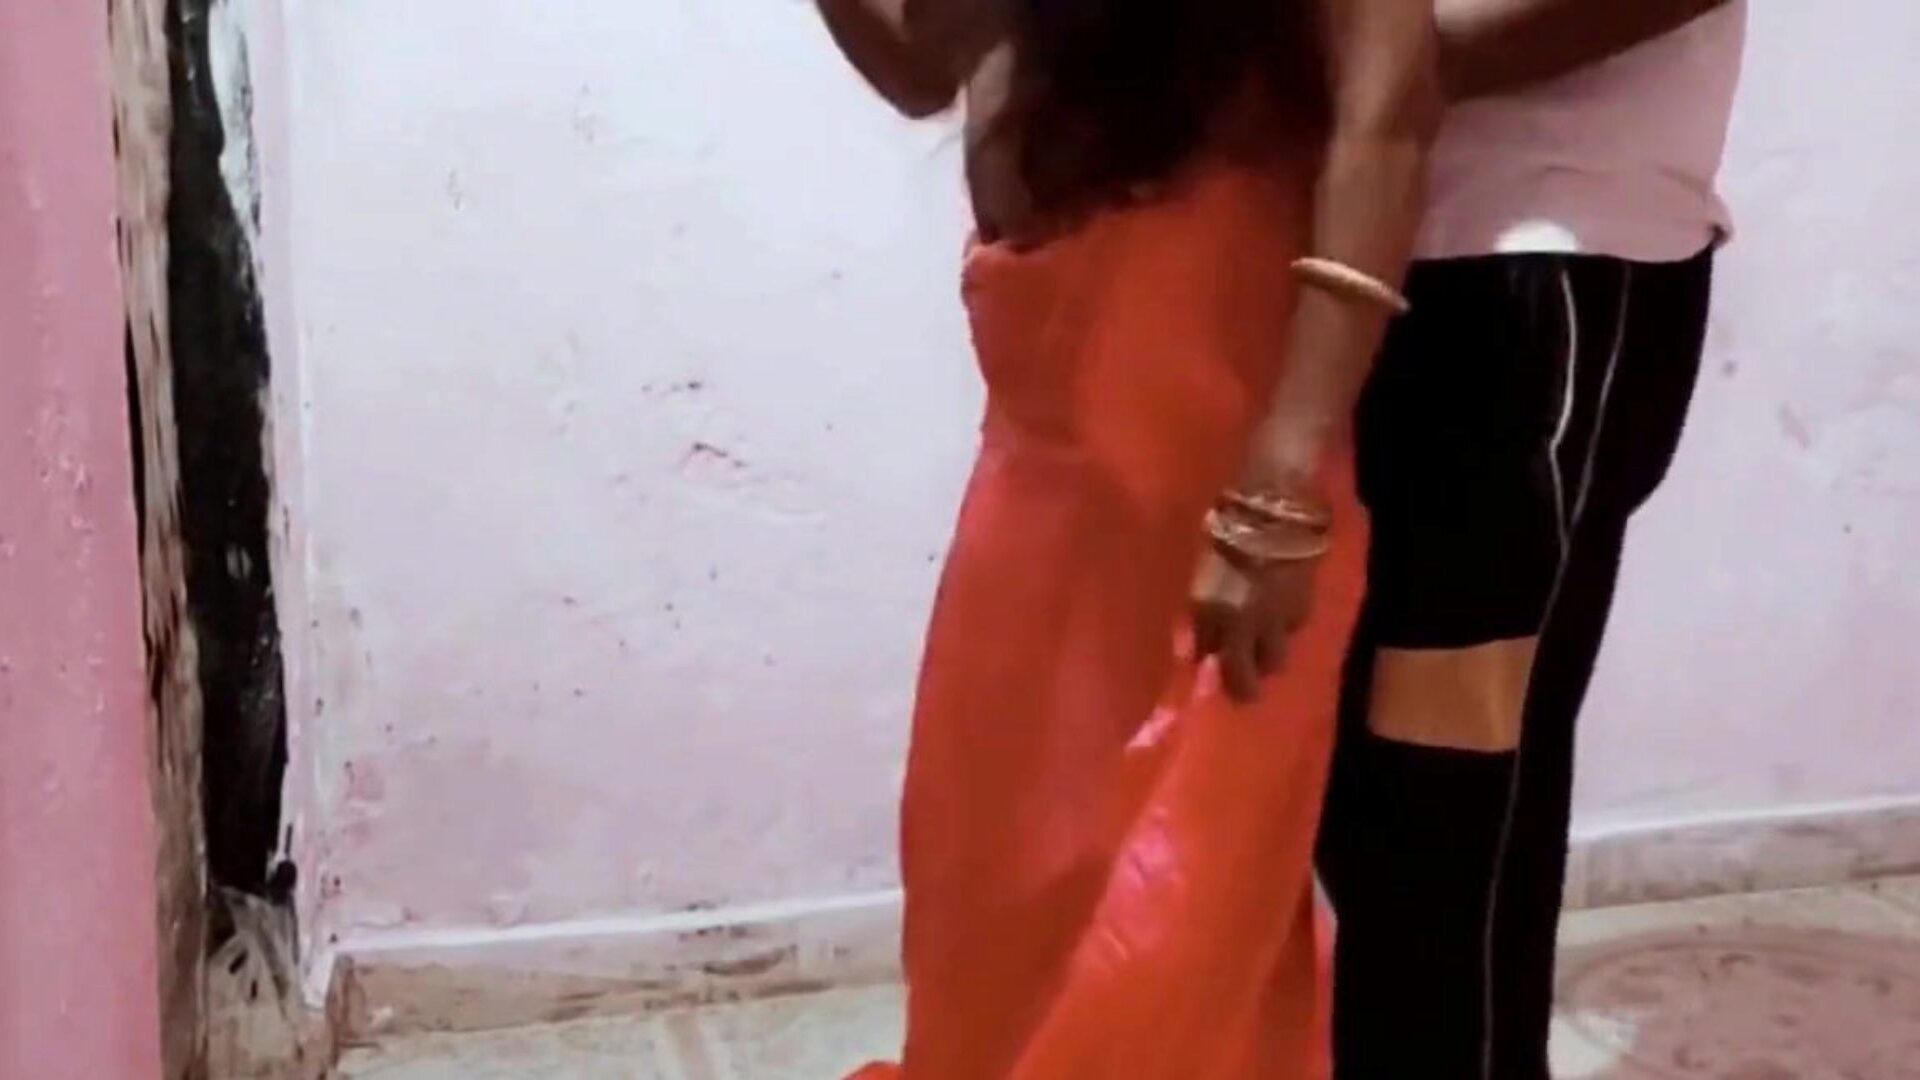 alex ne bhabhi ko choda pokój zabawa z mężem: darmowe porno b9 oglądaj alex ne bhabhi ko choda pokój zabawa z mężem odcinek na xhamster - ostateczne archiwum darmowych filmów porno z azjatyckimi twardymi filmami porno ze Sri Lanki w HD